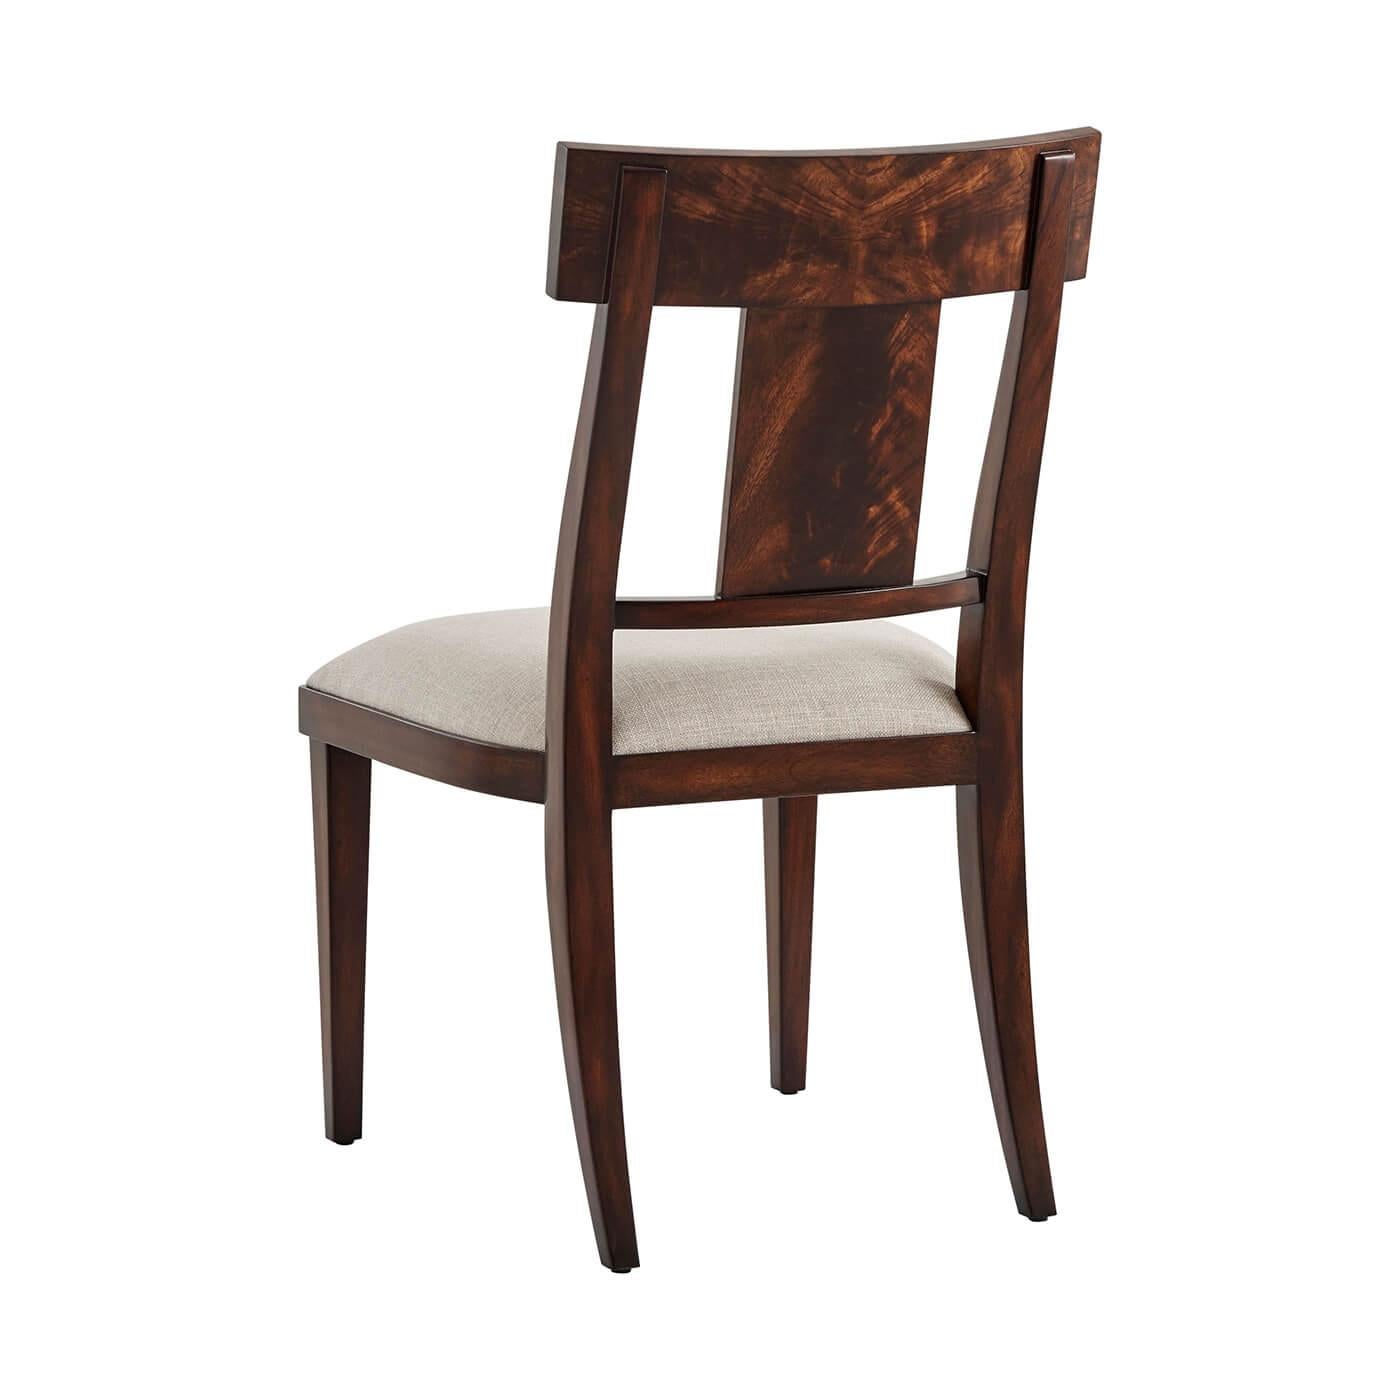 Moderner Beistellstuhl aus Mahagoni im Neoklassizismus, mit flammenfurnierter Stangenschiene und massiver Leiste über einem gepolsterten Sitz, auf quadratischen, spitz zulaufenden Beinen.
Abmessungen: 20